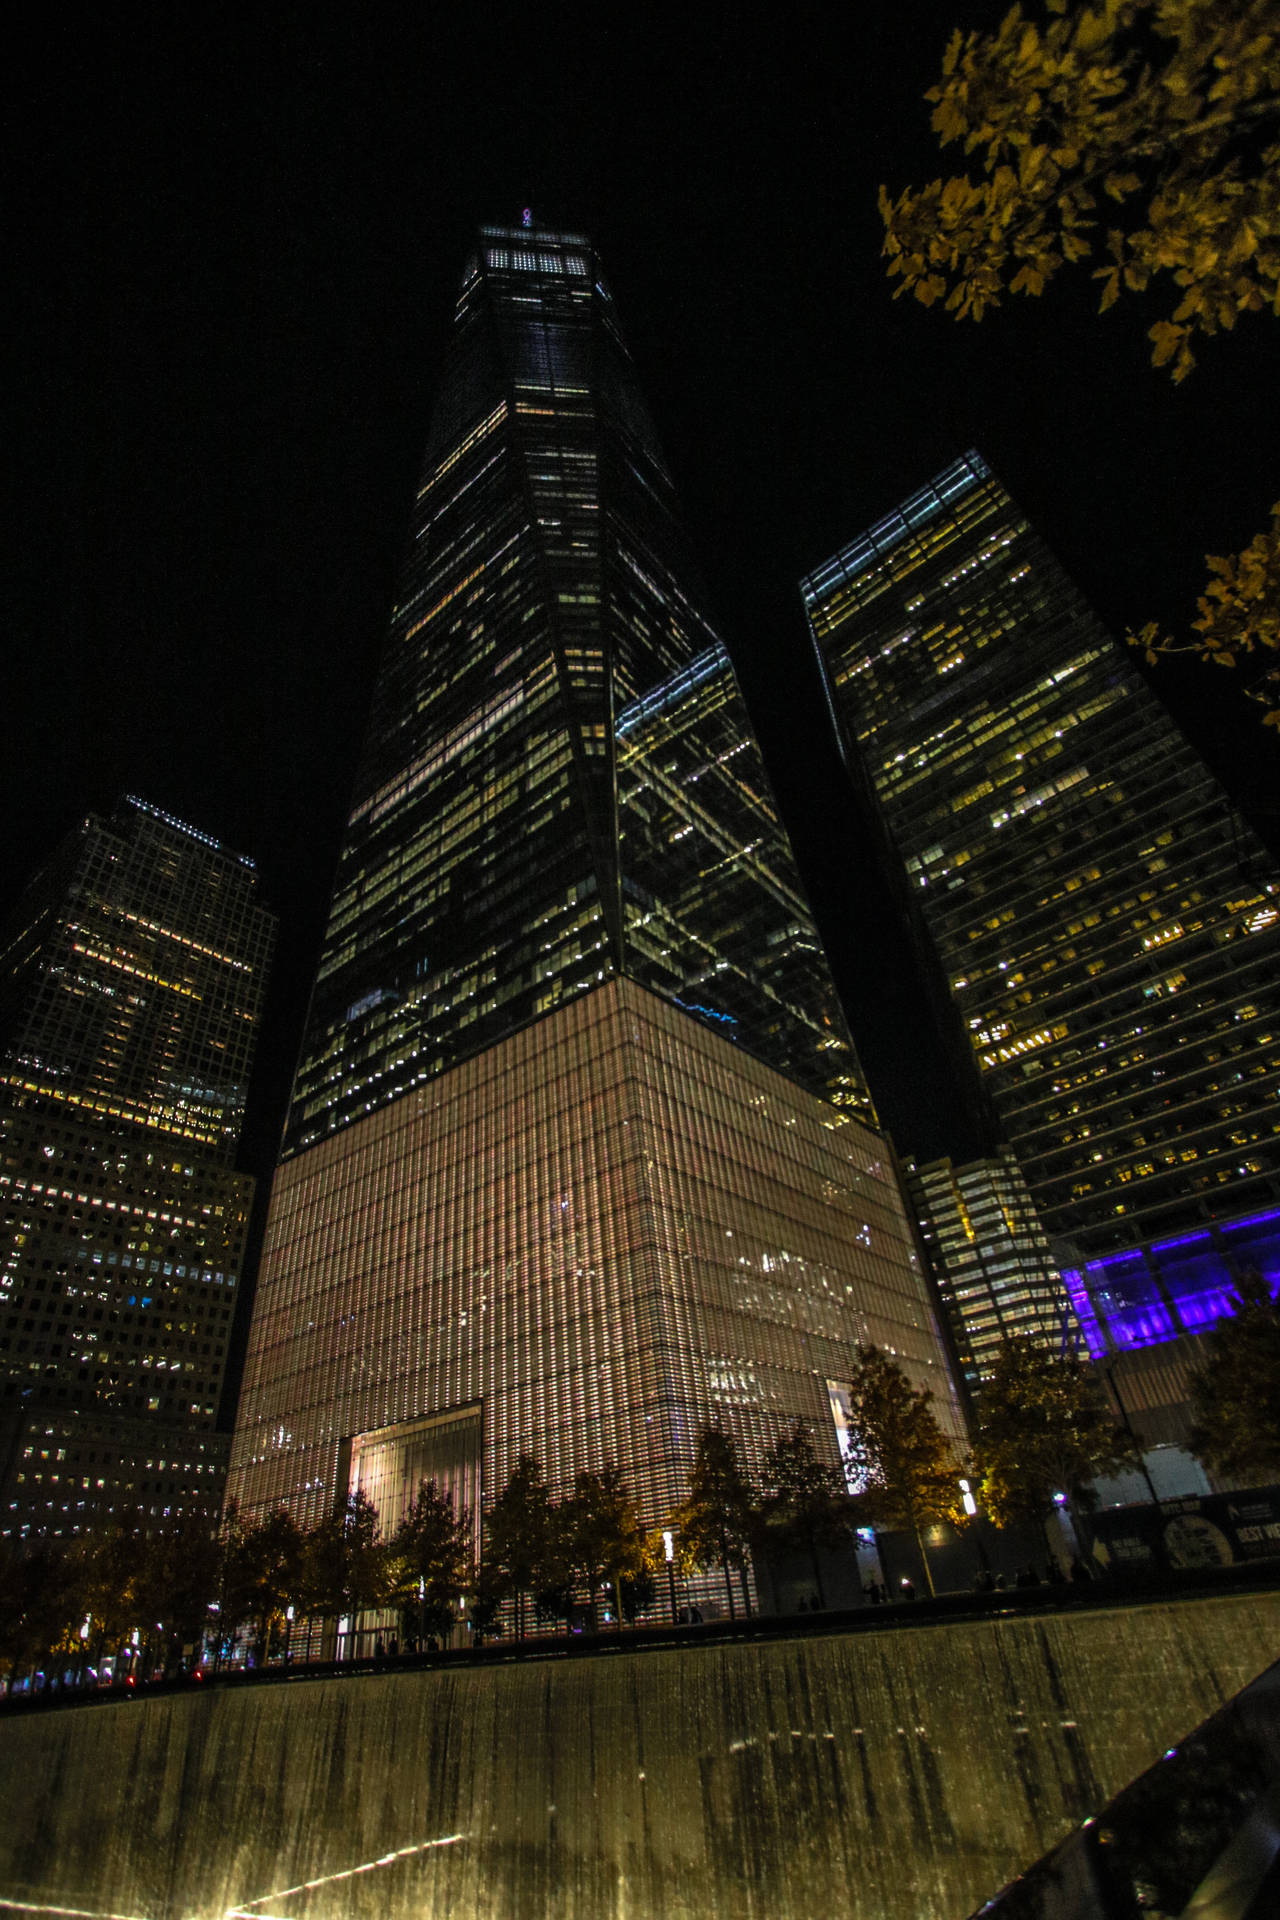 Eniphone-bakgrundsbild Av One World Trade Center På Natten I New York. Wallpaper